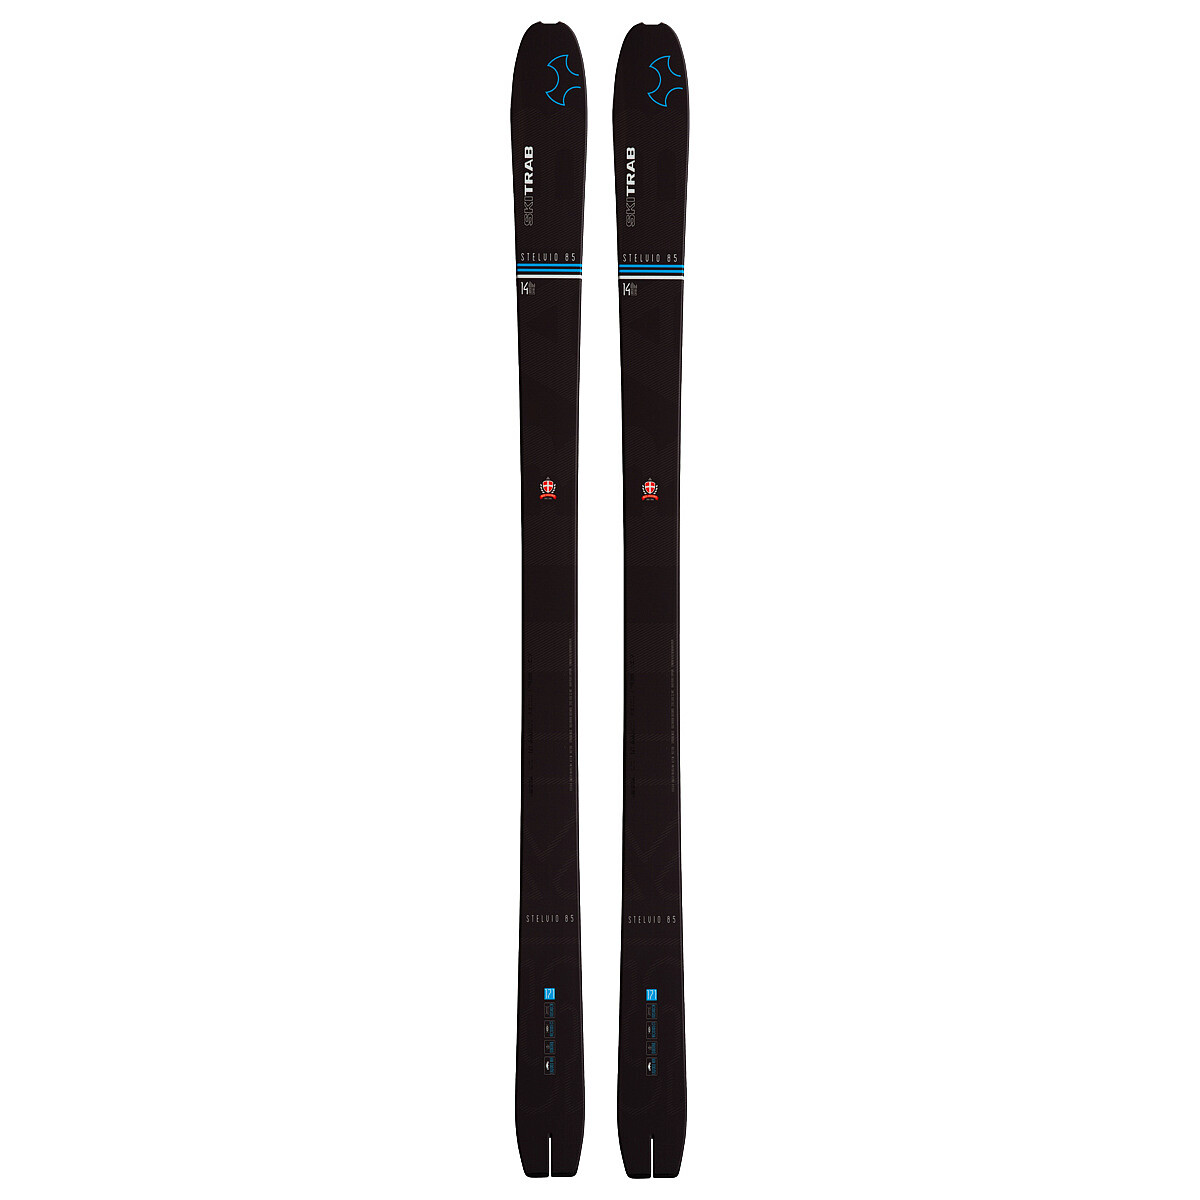 Skialp készlet Ski Trab  Stelvio 85 + Mászóövek + súlyok